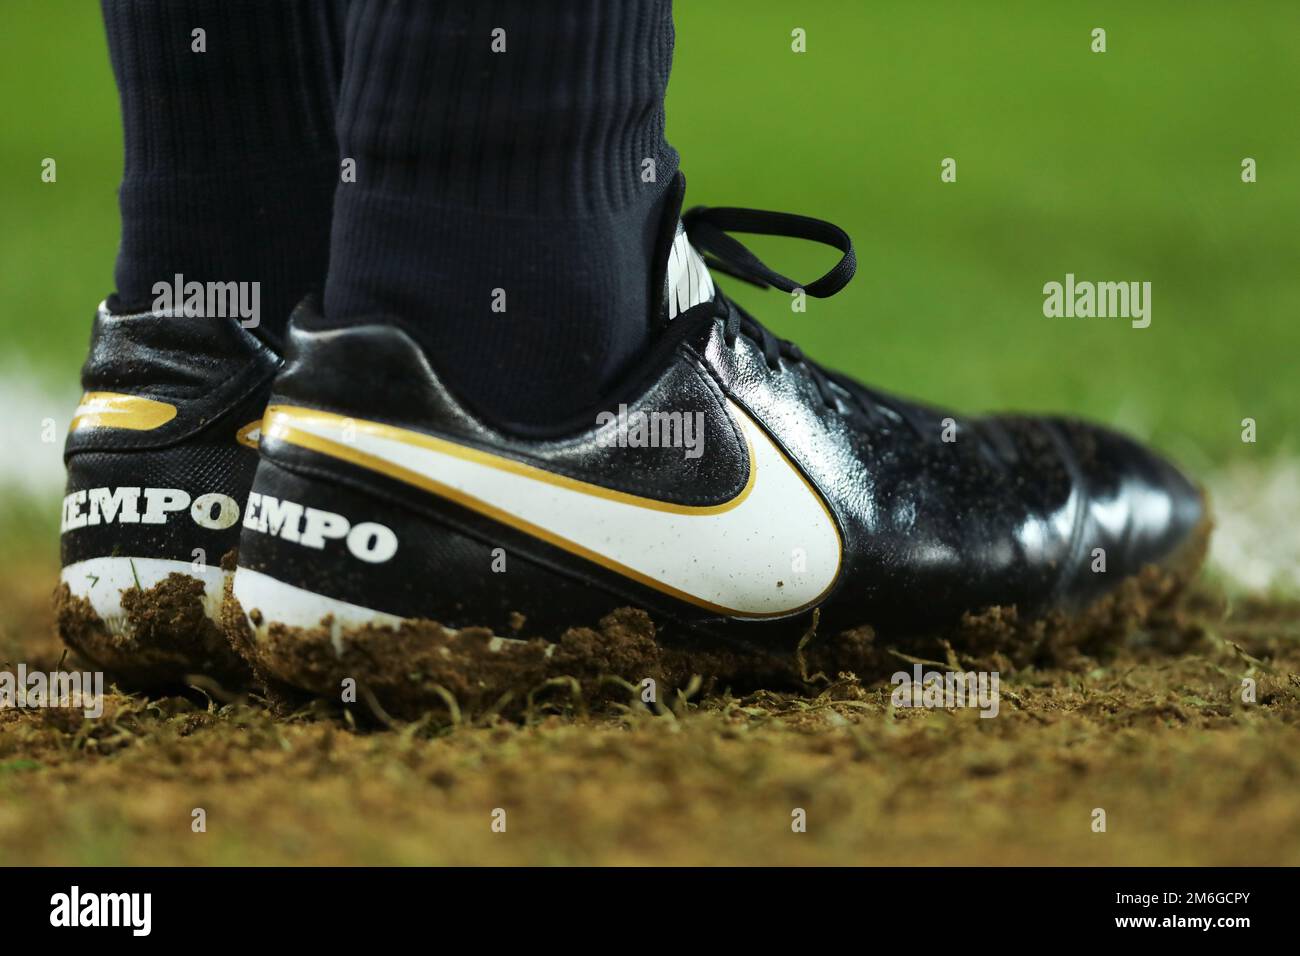 Nike football boots immagini e fotografie stock ad alta risoluzione -  Pagina 2 - Alamy